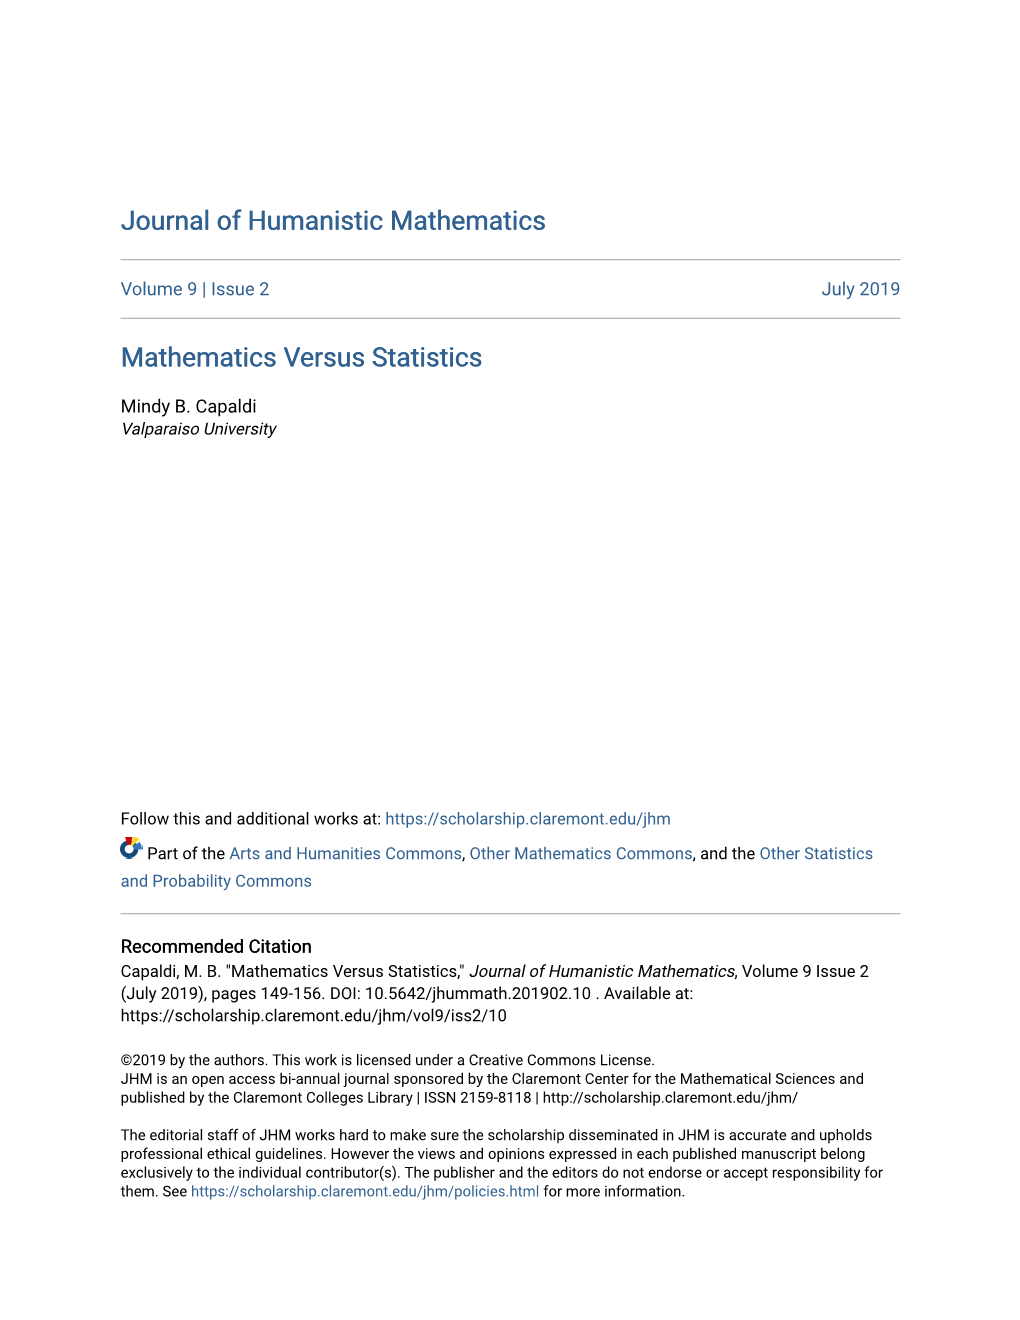 Mathematics Versus Statistics